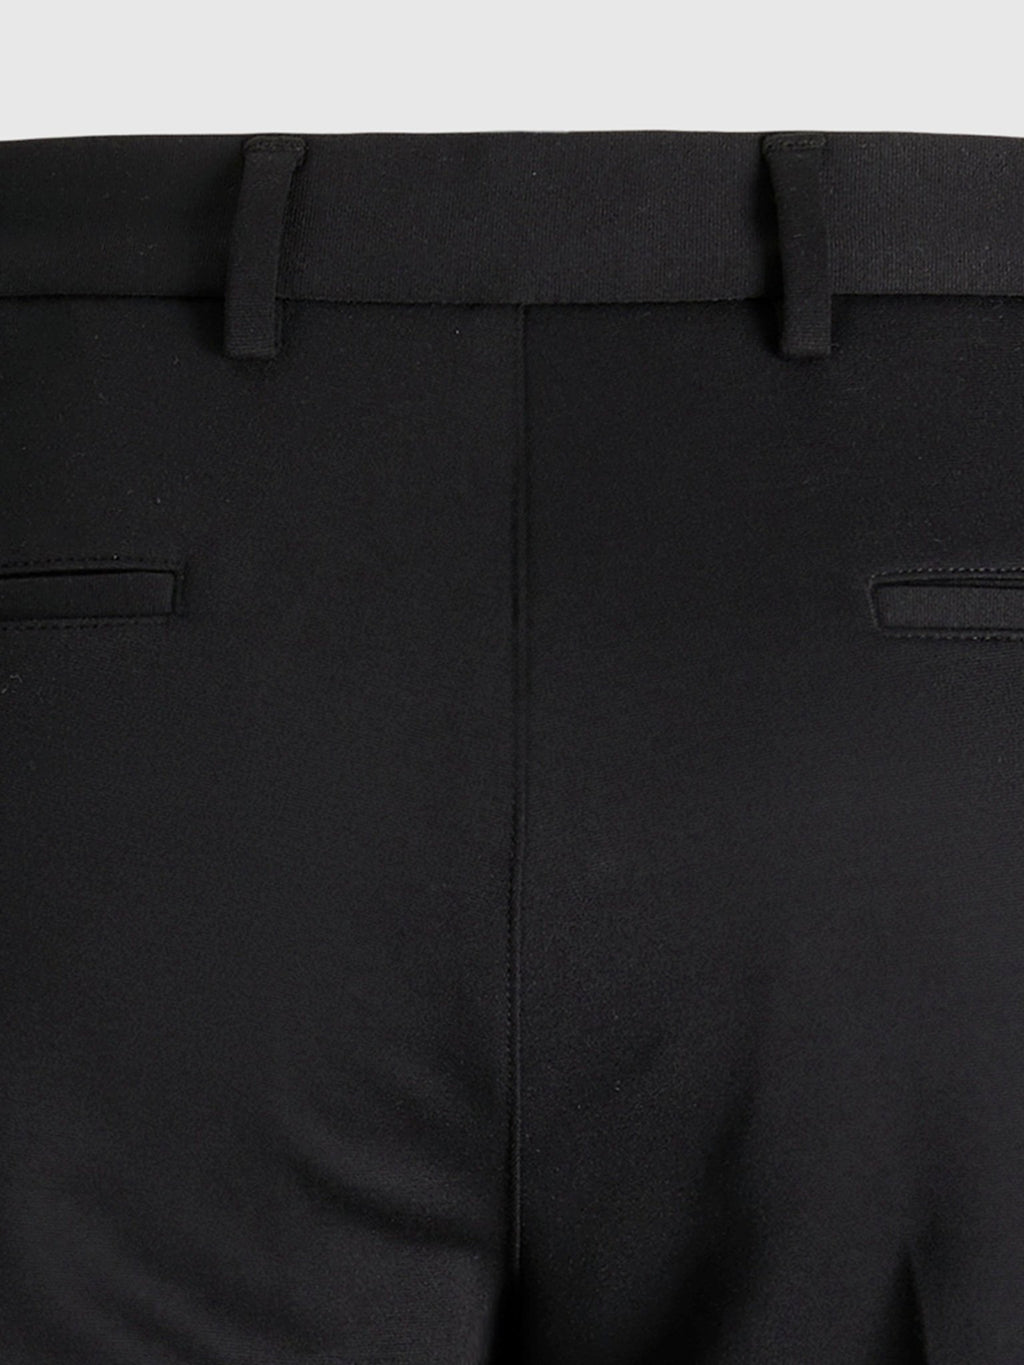 Originalne hlače za performanse (redovite) - crne